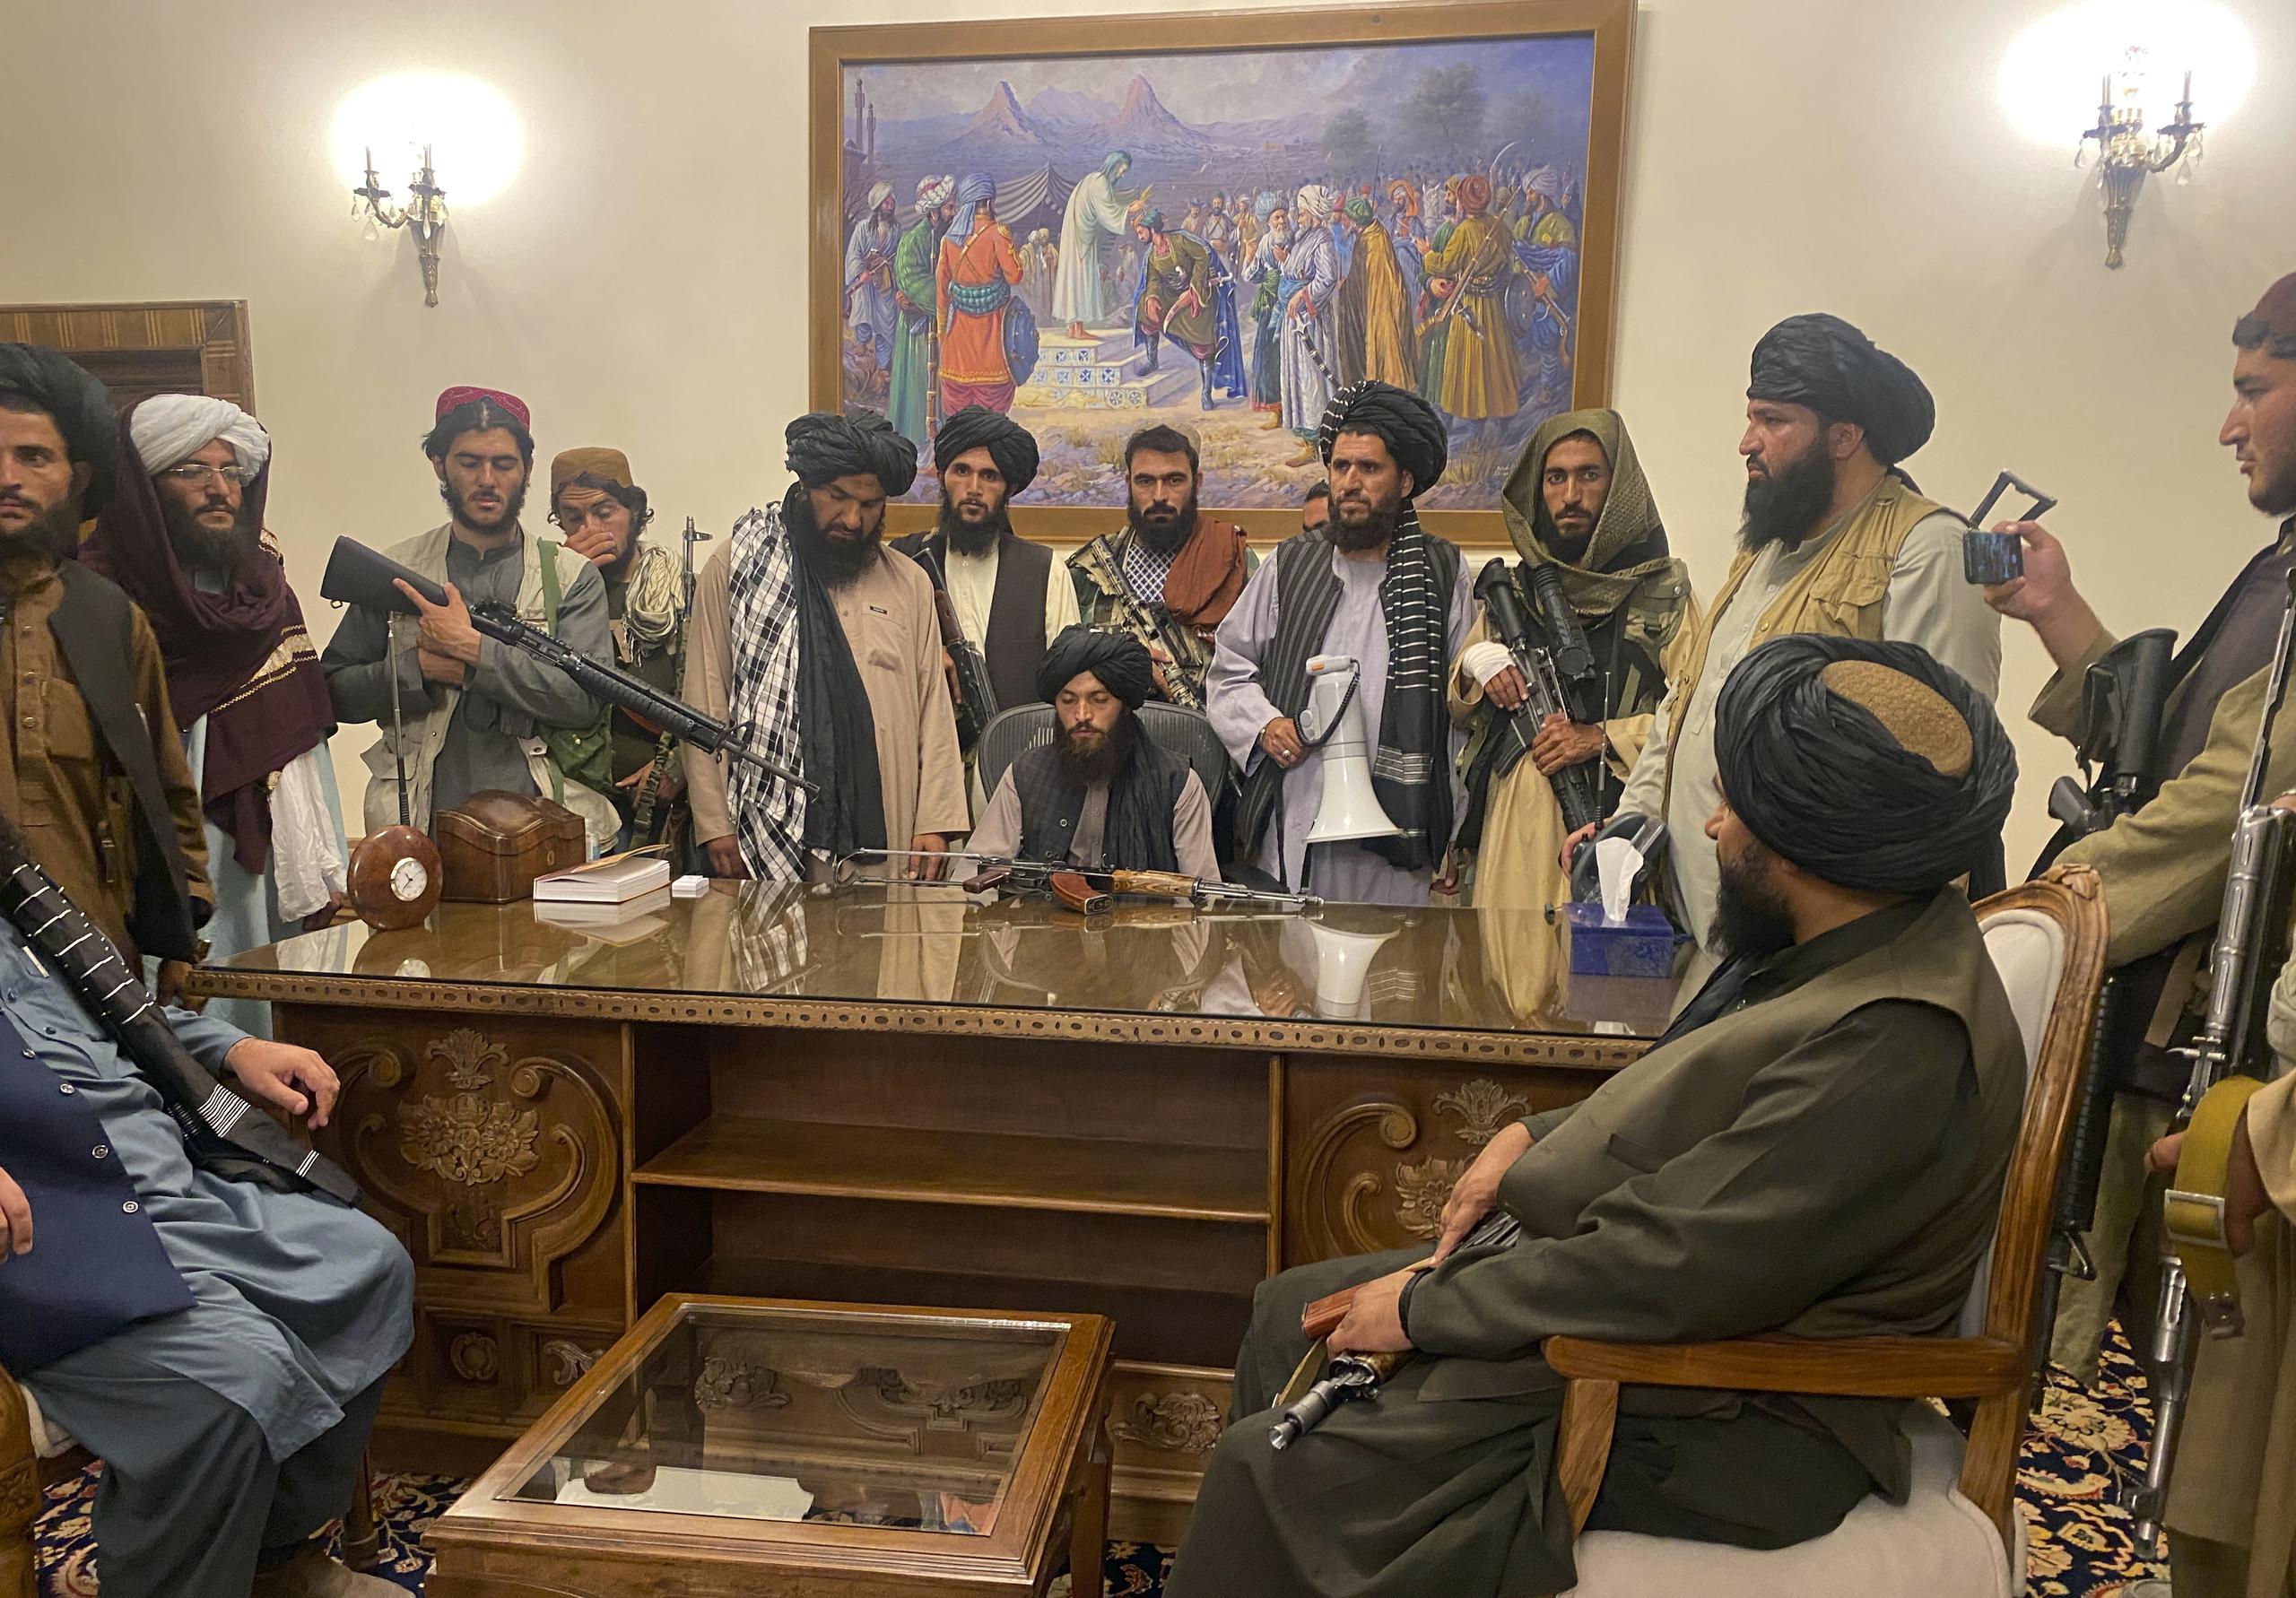 Las contradicciones entre los mensajes que dan los líderes del Talibán y las acciones que toman son señalados como indicios de conflictos internos que reflejarían divisiones en el movimiento.